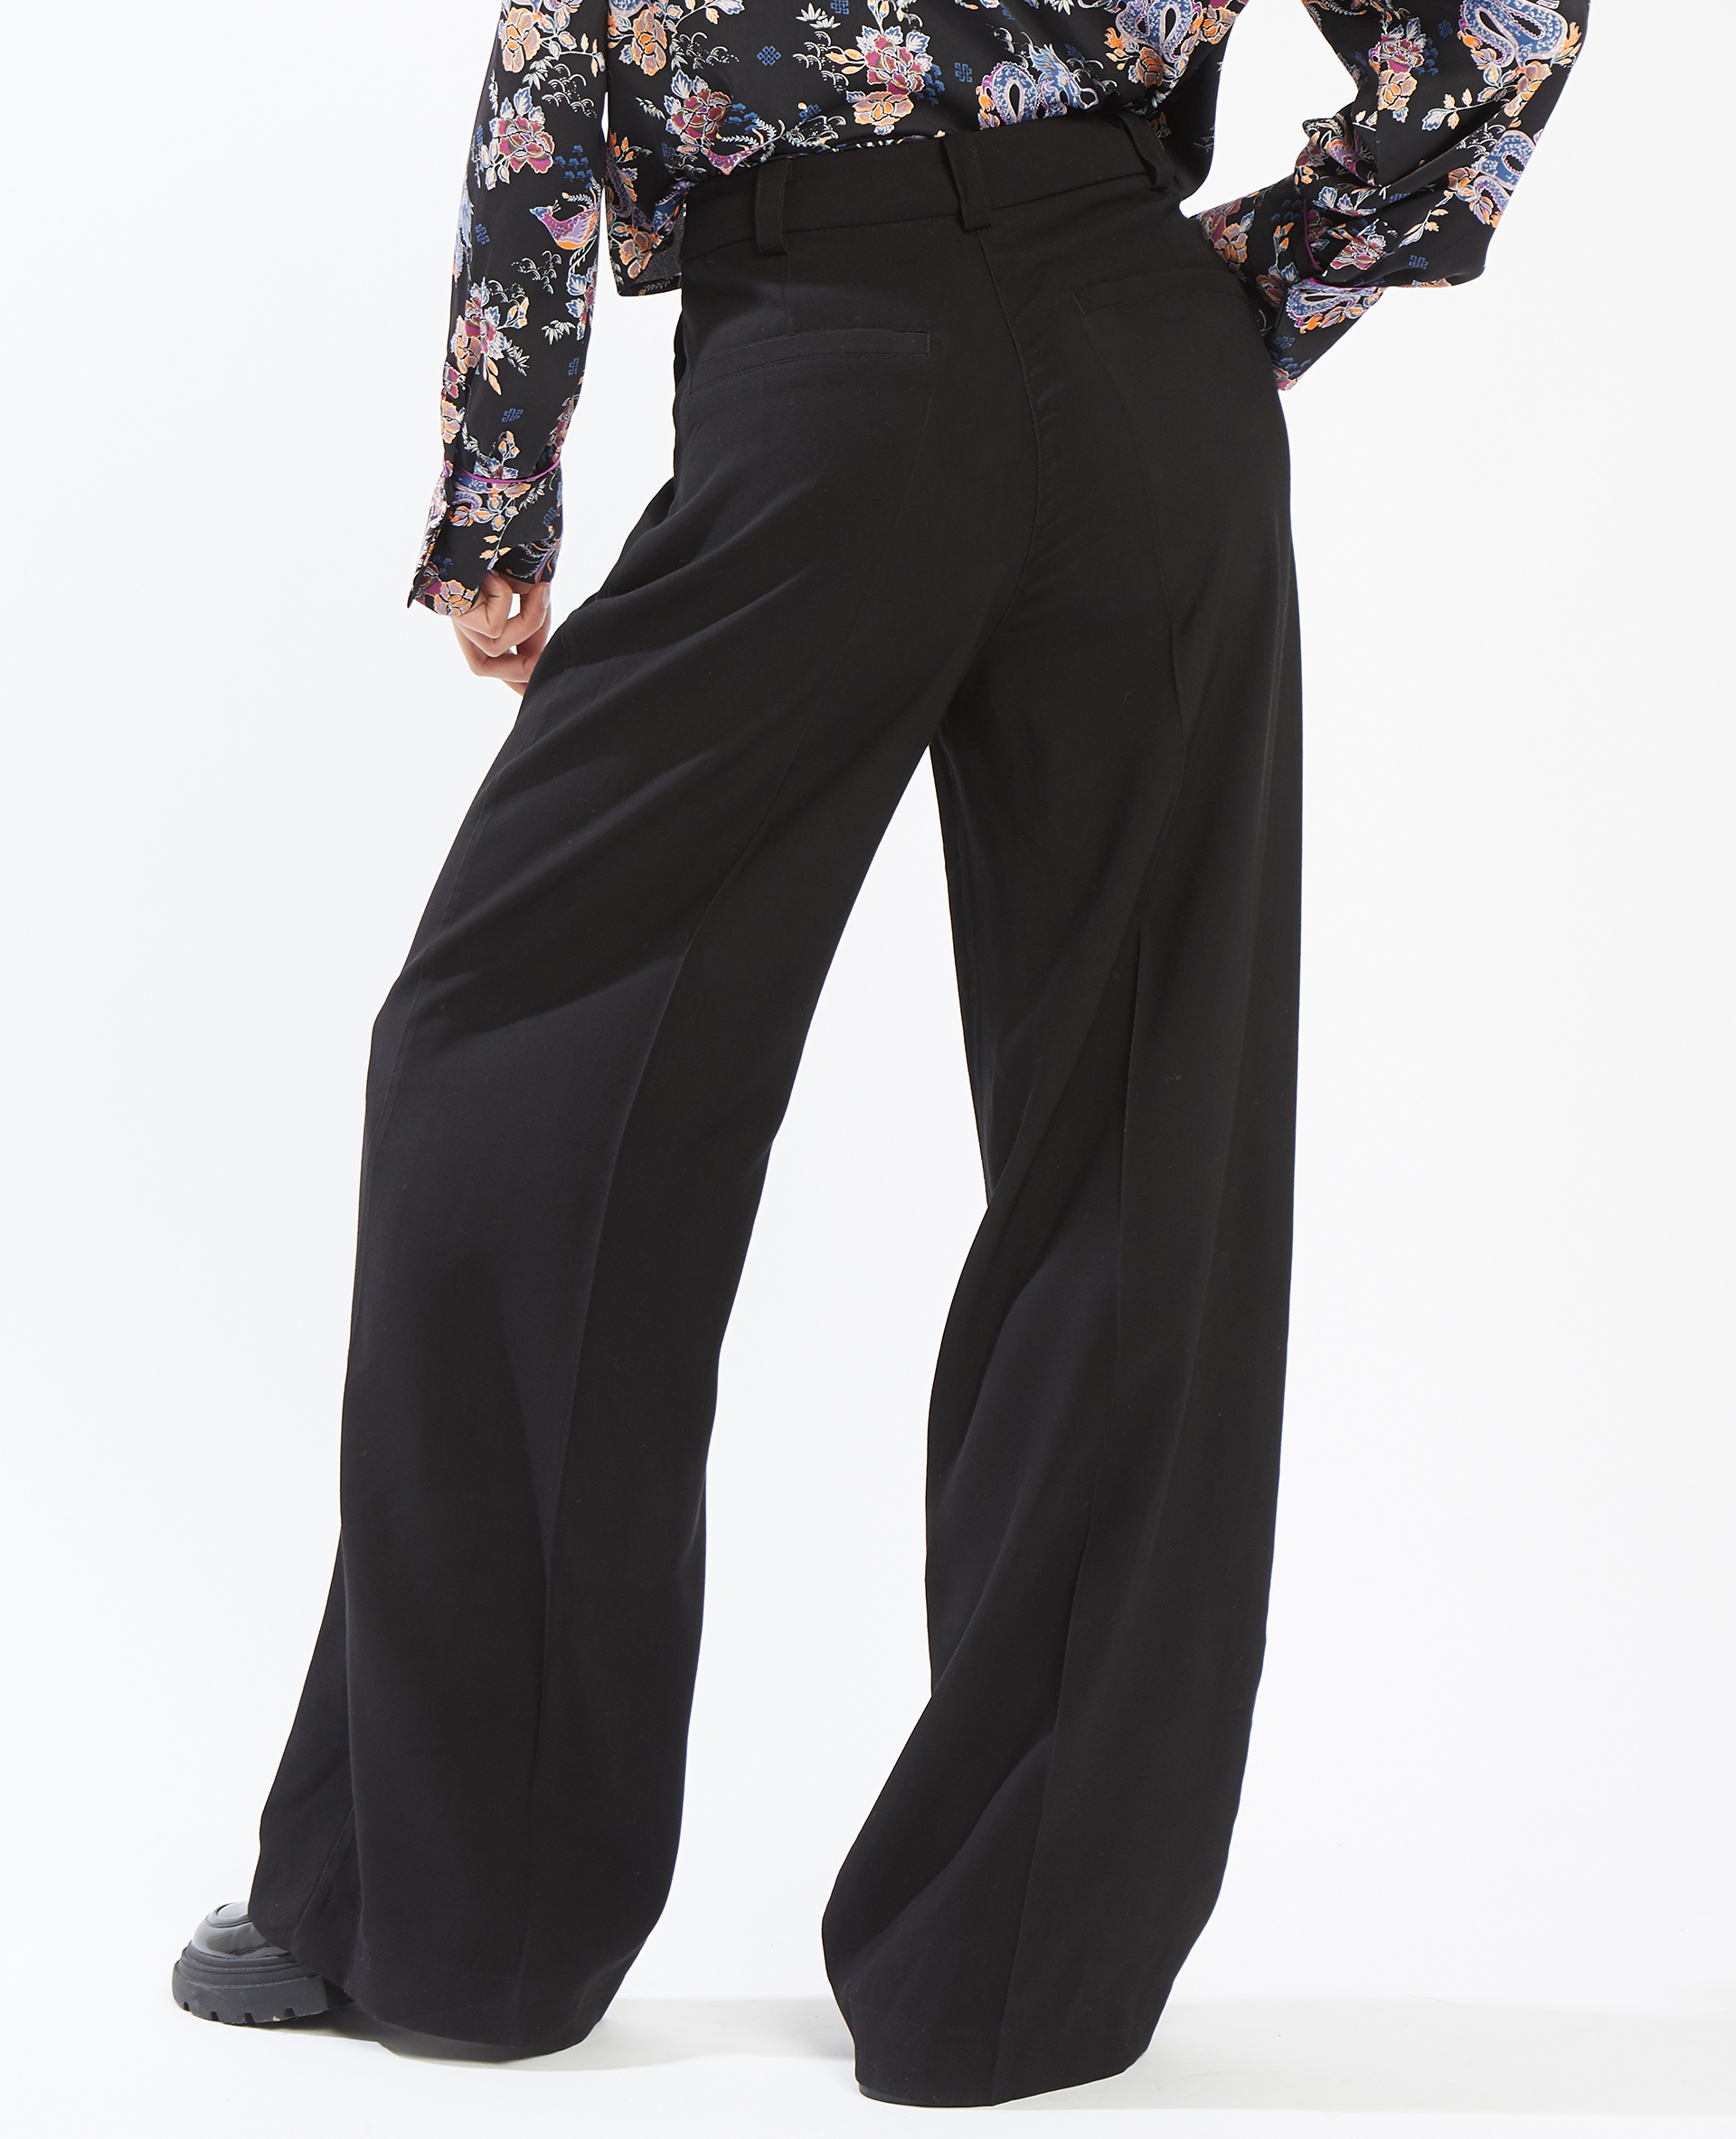 Pantalon large et droit SMALL noir - Pimkie